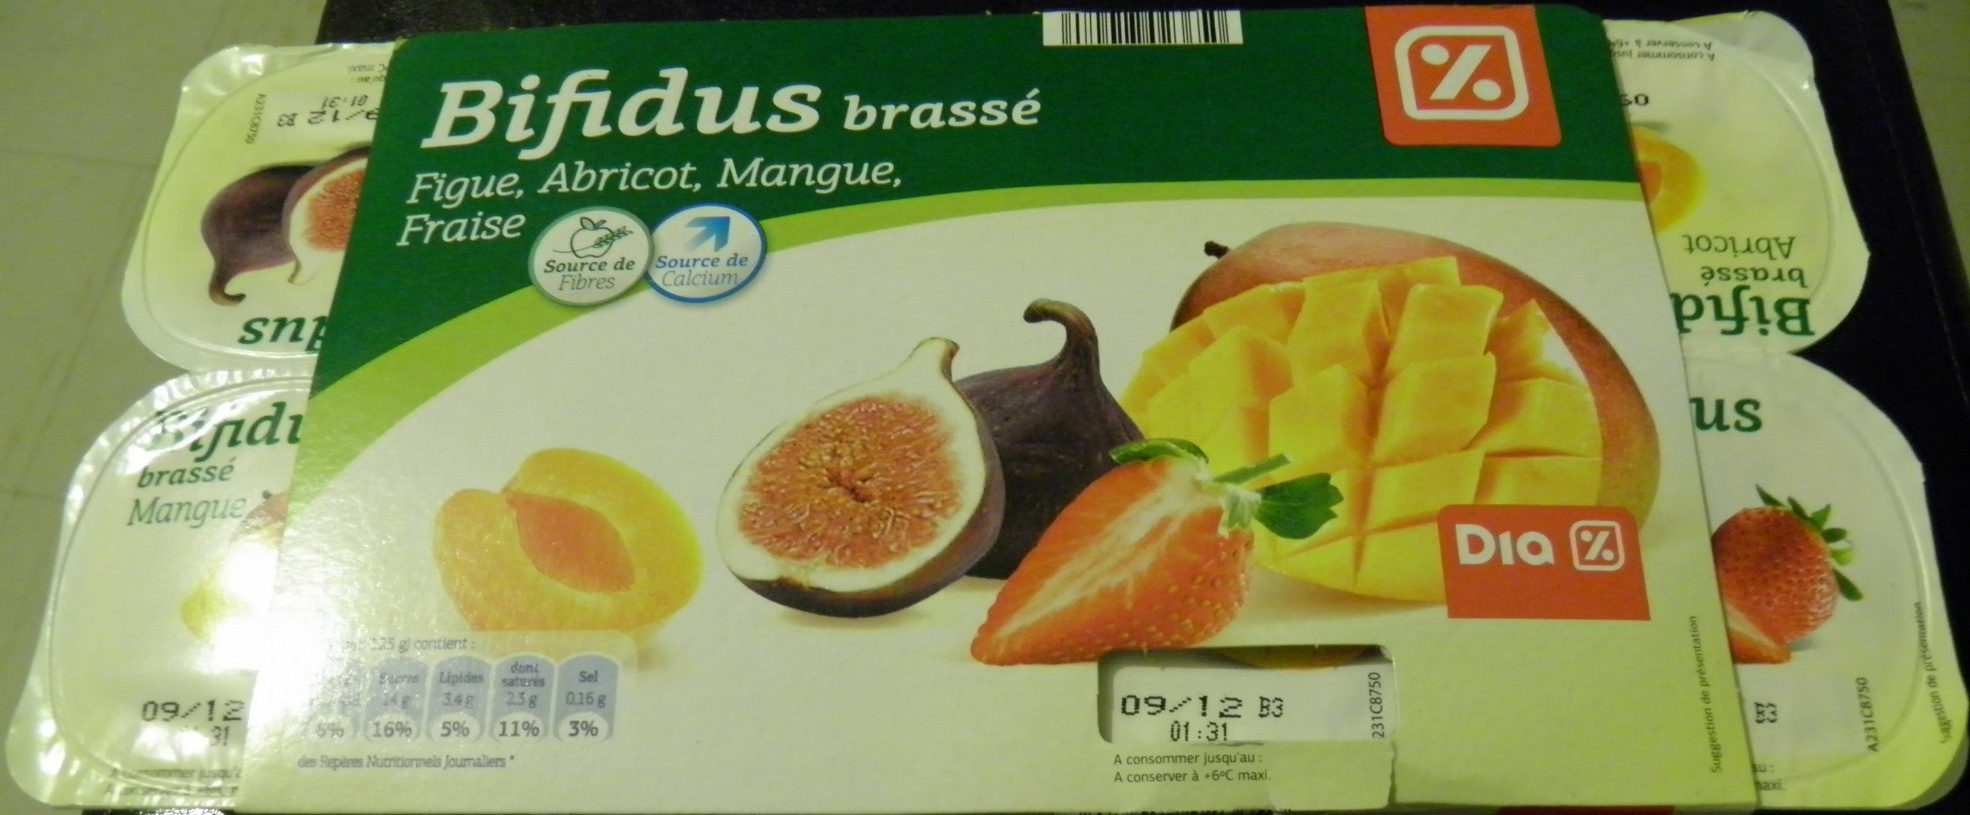 Bifidus brassé (Figue, Abricot, Mangue, Fraise) 8 Pots - Product - fr